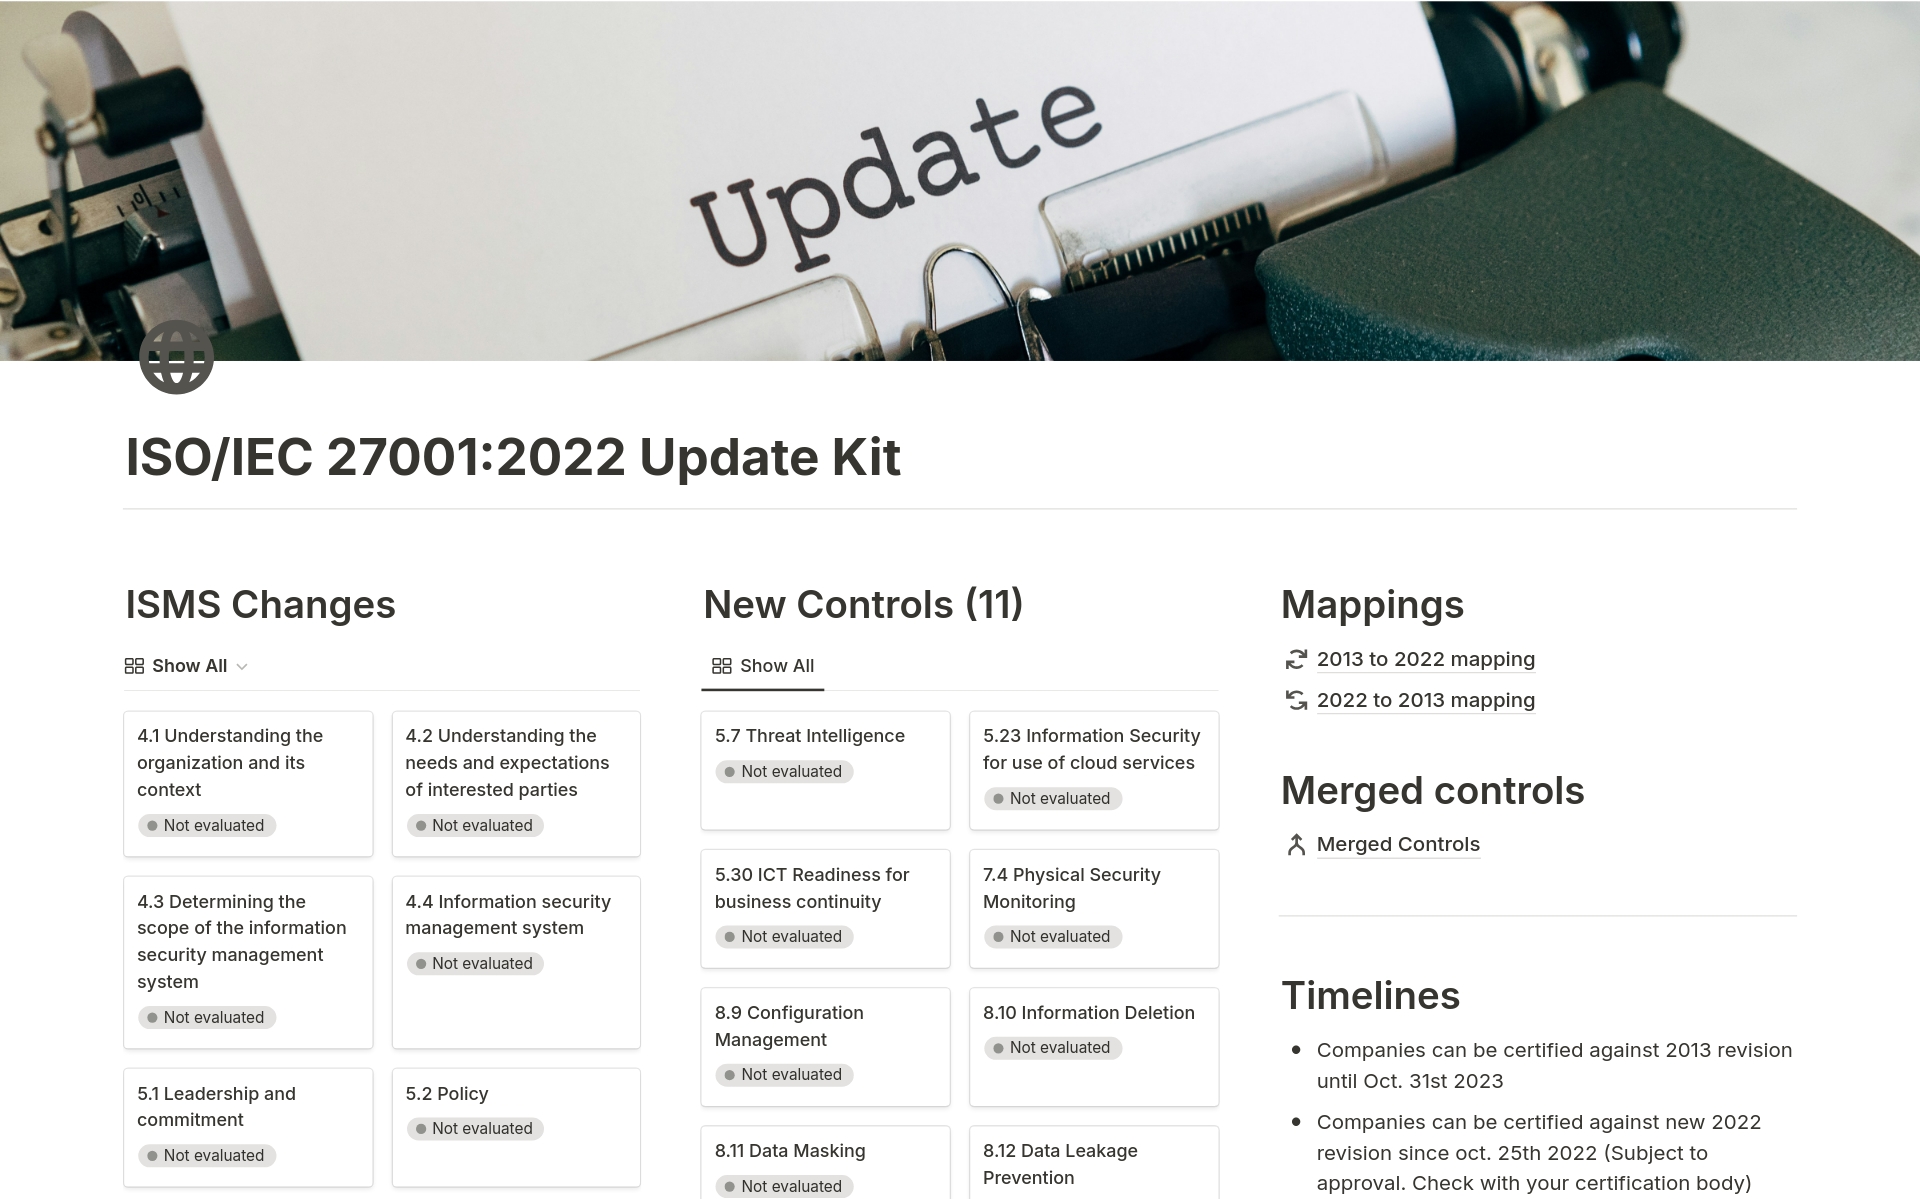 Vista previa de plantilla para ISO/IEC 27001:2022 Update Kit